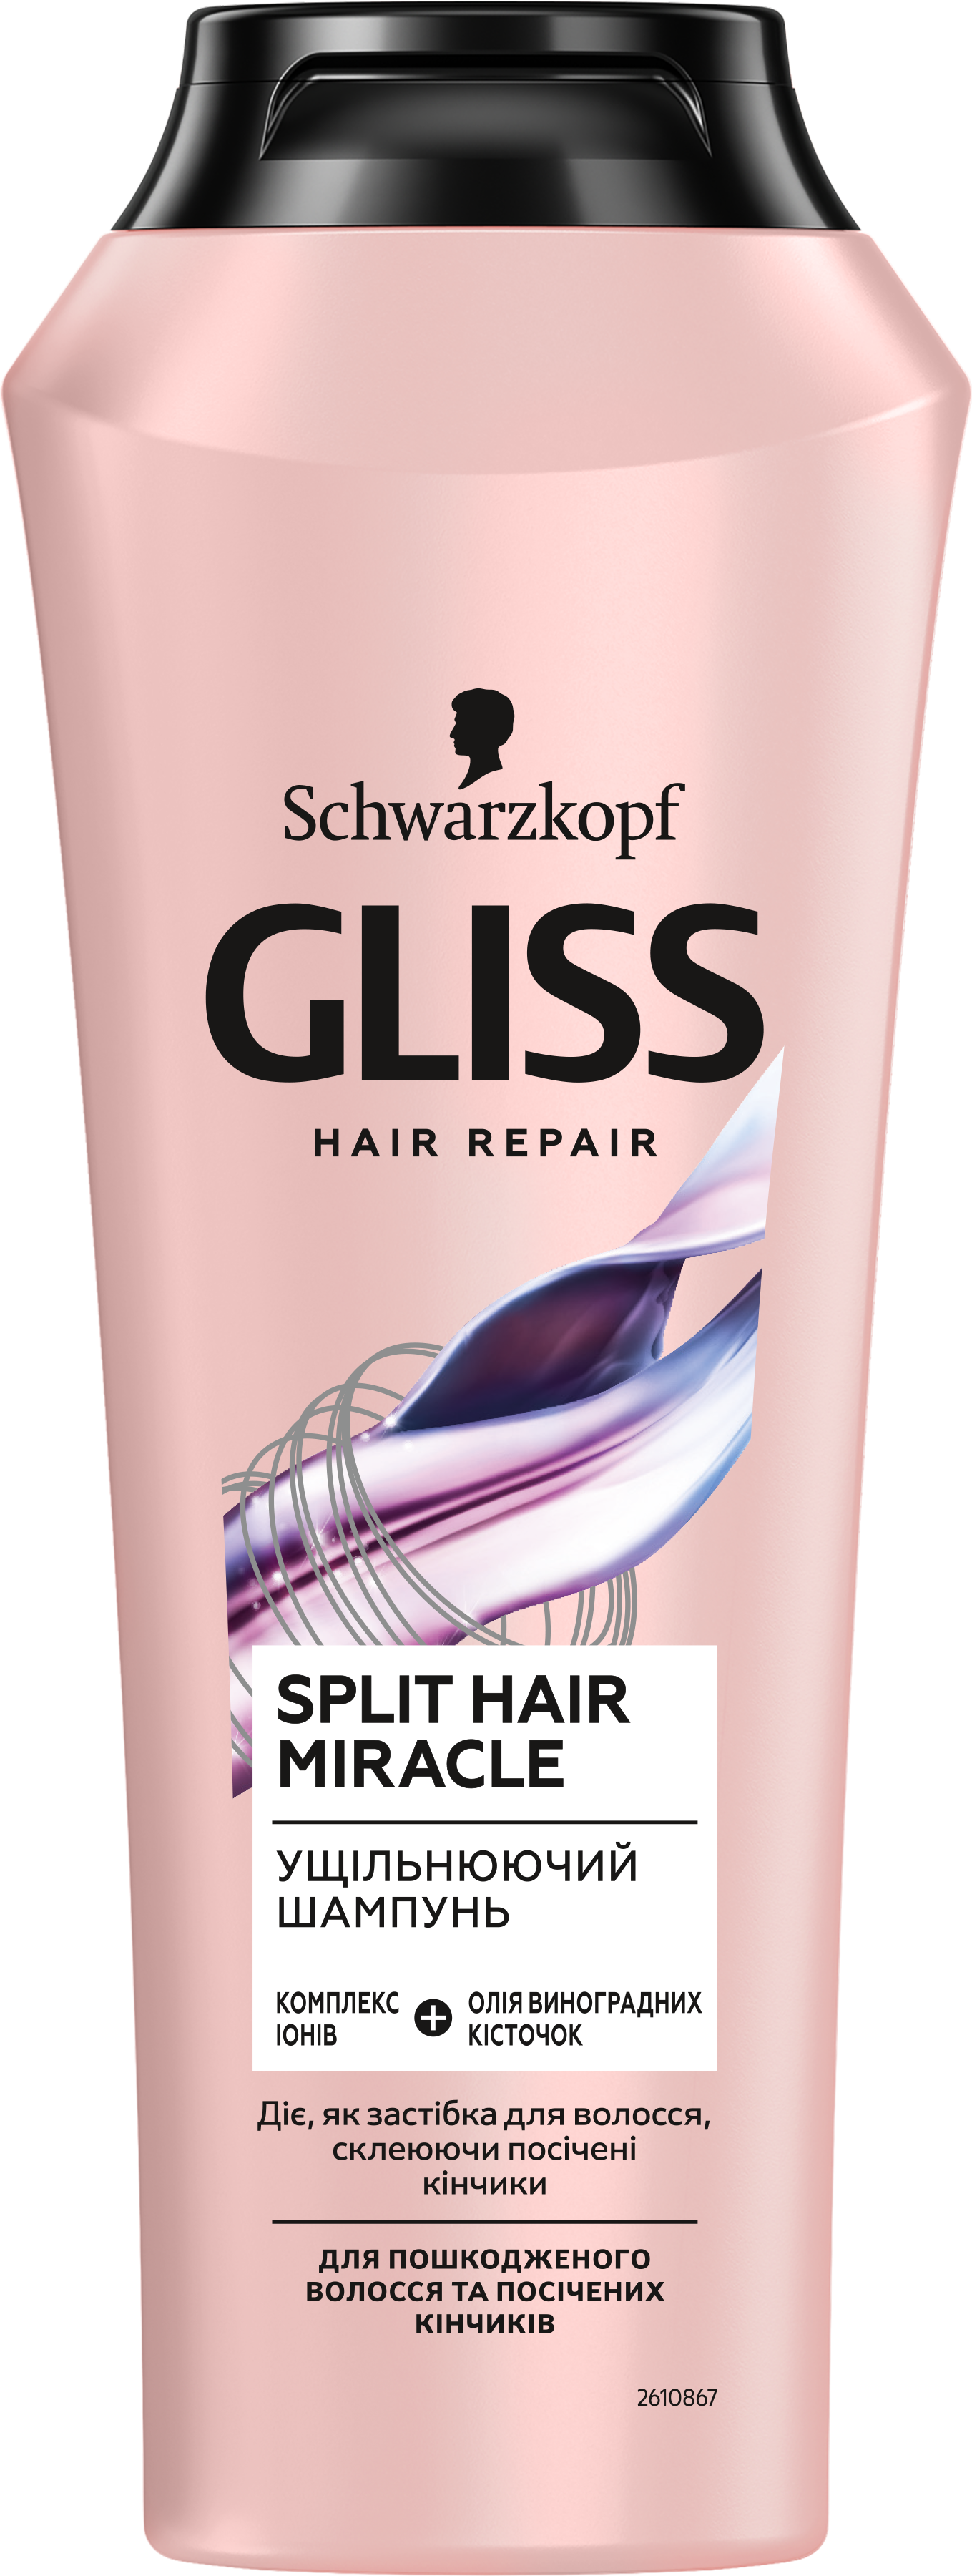 Подарочный набор Gliss Split Hair Miracle: Шампунь, 250 мл + Бальзам, 200 мл - фото 6